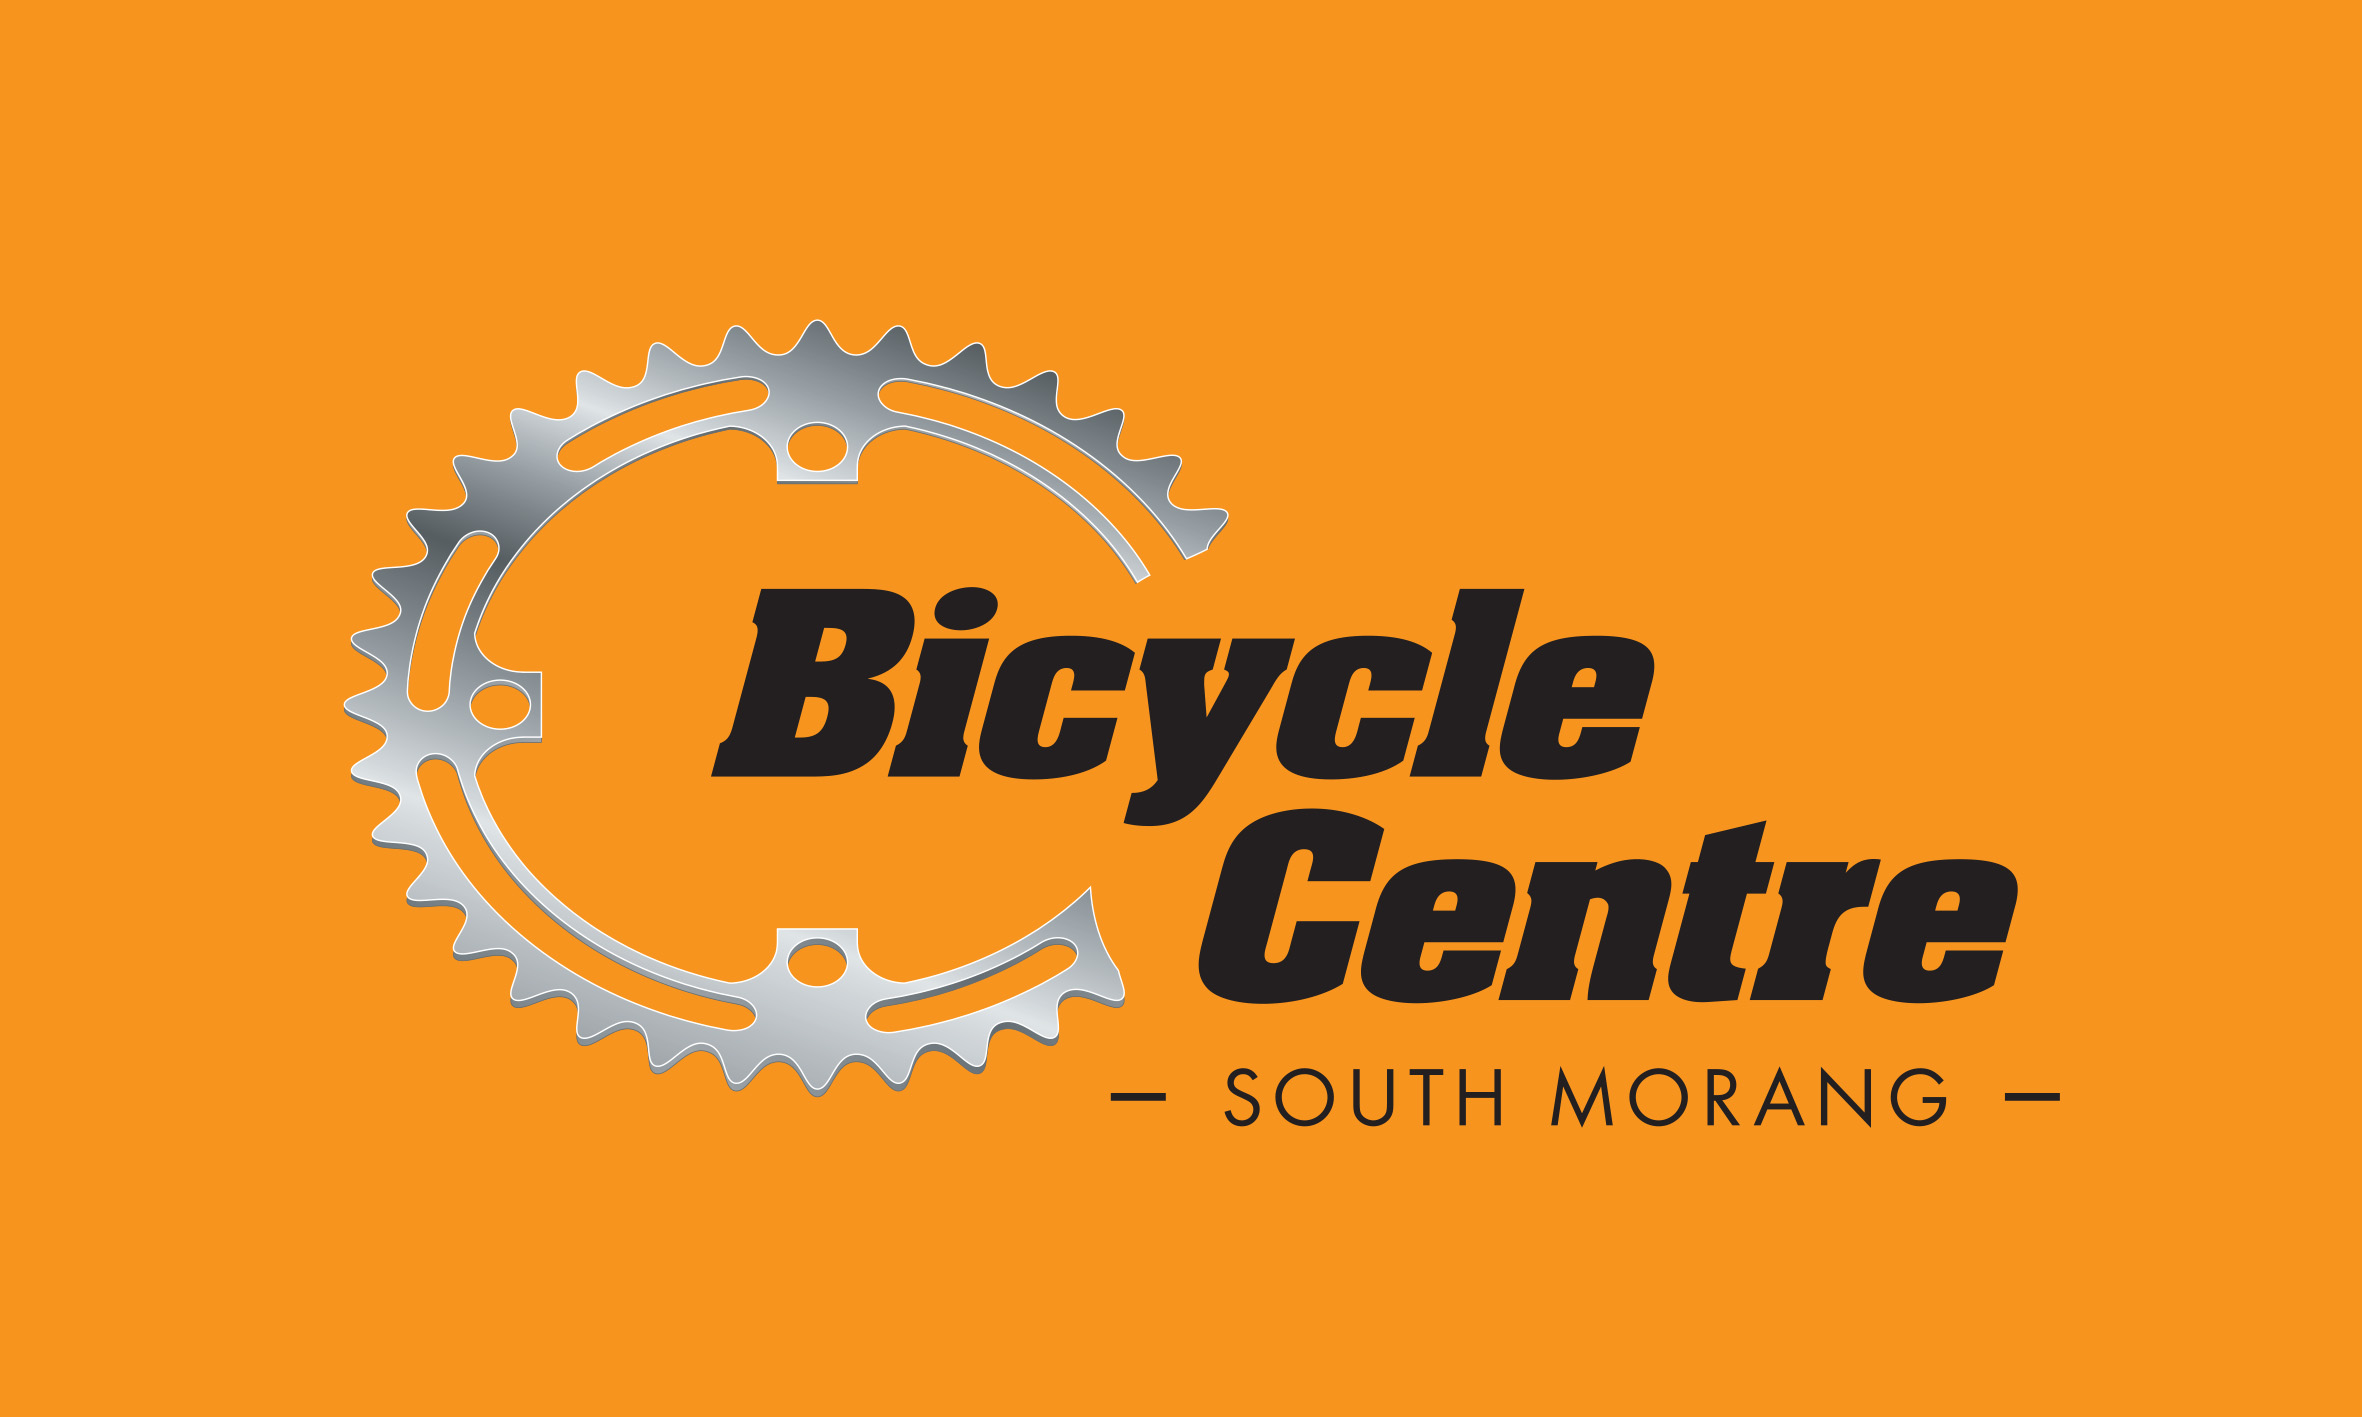 Bicycle Centre South Morang logo